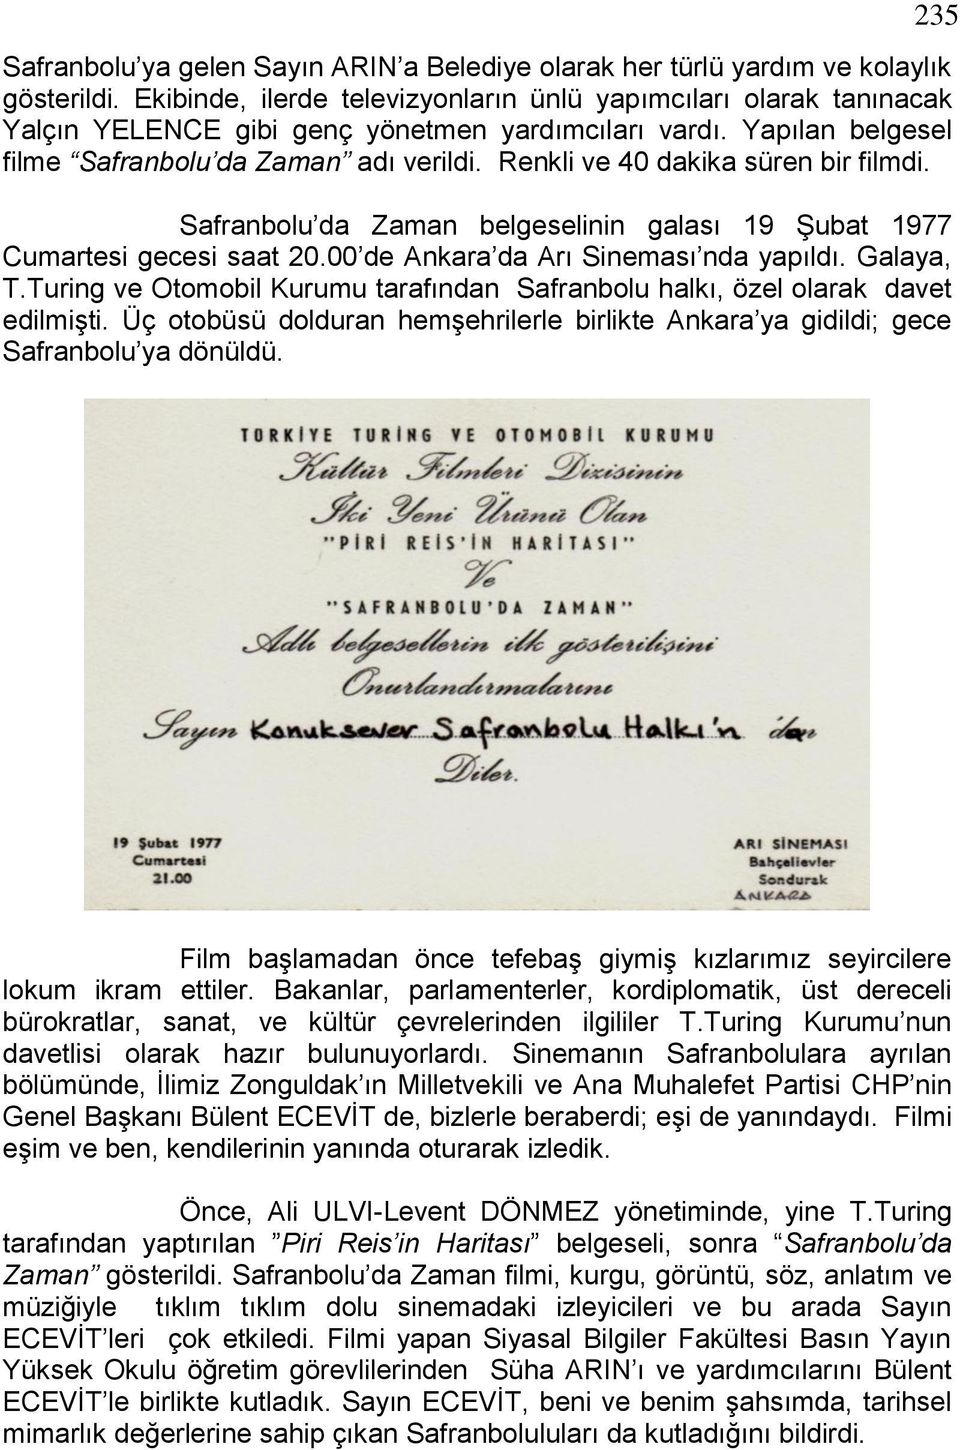 Renkli ve 40 dakika süren bir filmdi. Safranbolu da Zaman belgeselinin galası 19 ġubat 1977 Cumartesi gecesi saat 20.00 de Ankara da Arı Sineması nda yapıldı. Galaya, T.